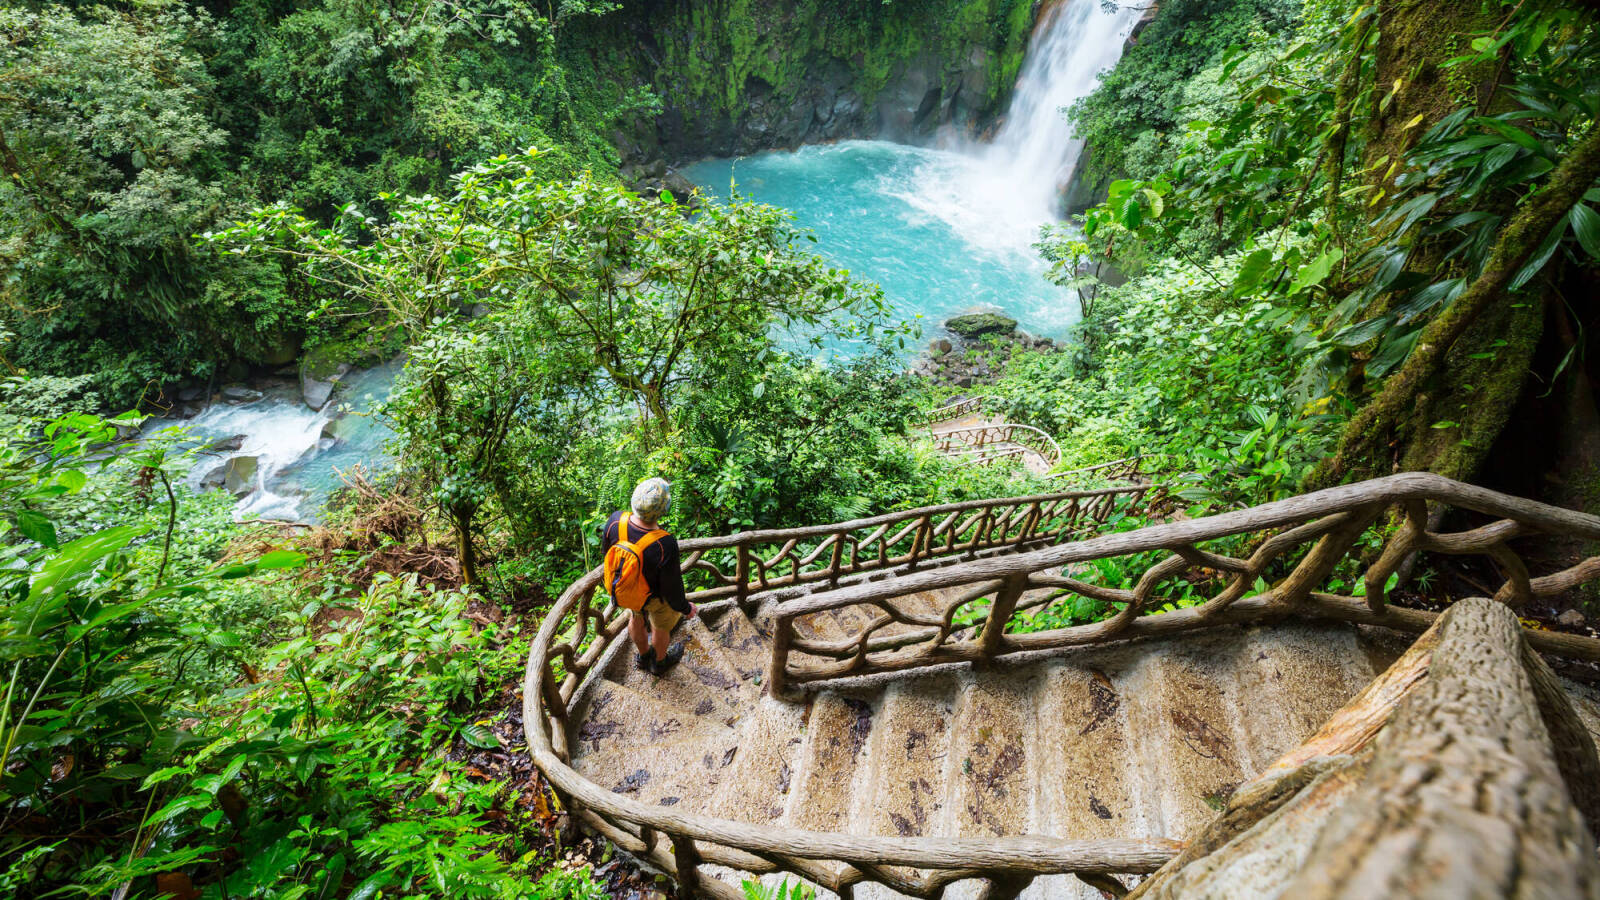 Коста-Рика - страна, бережно хранящая тропический рай